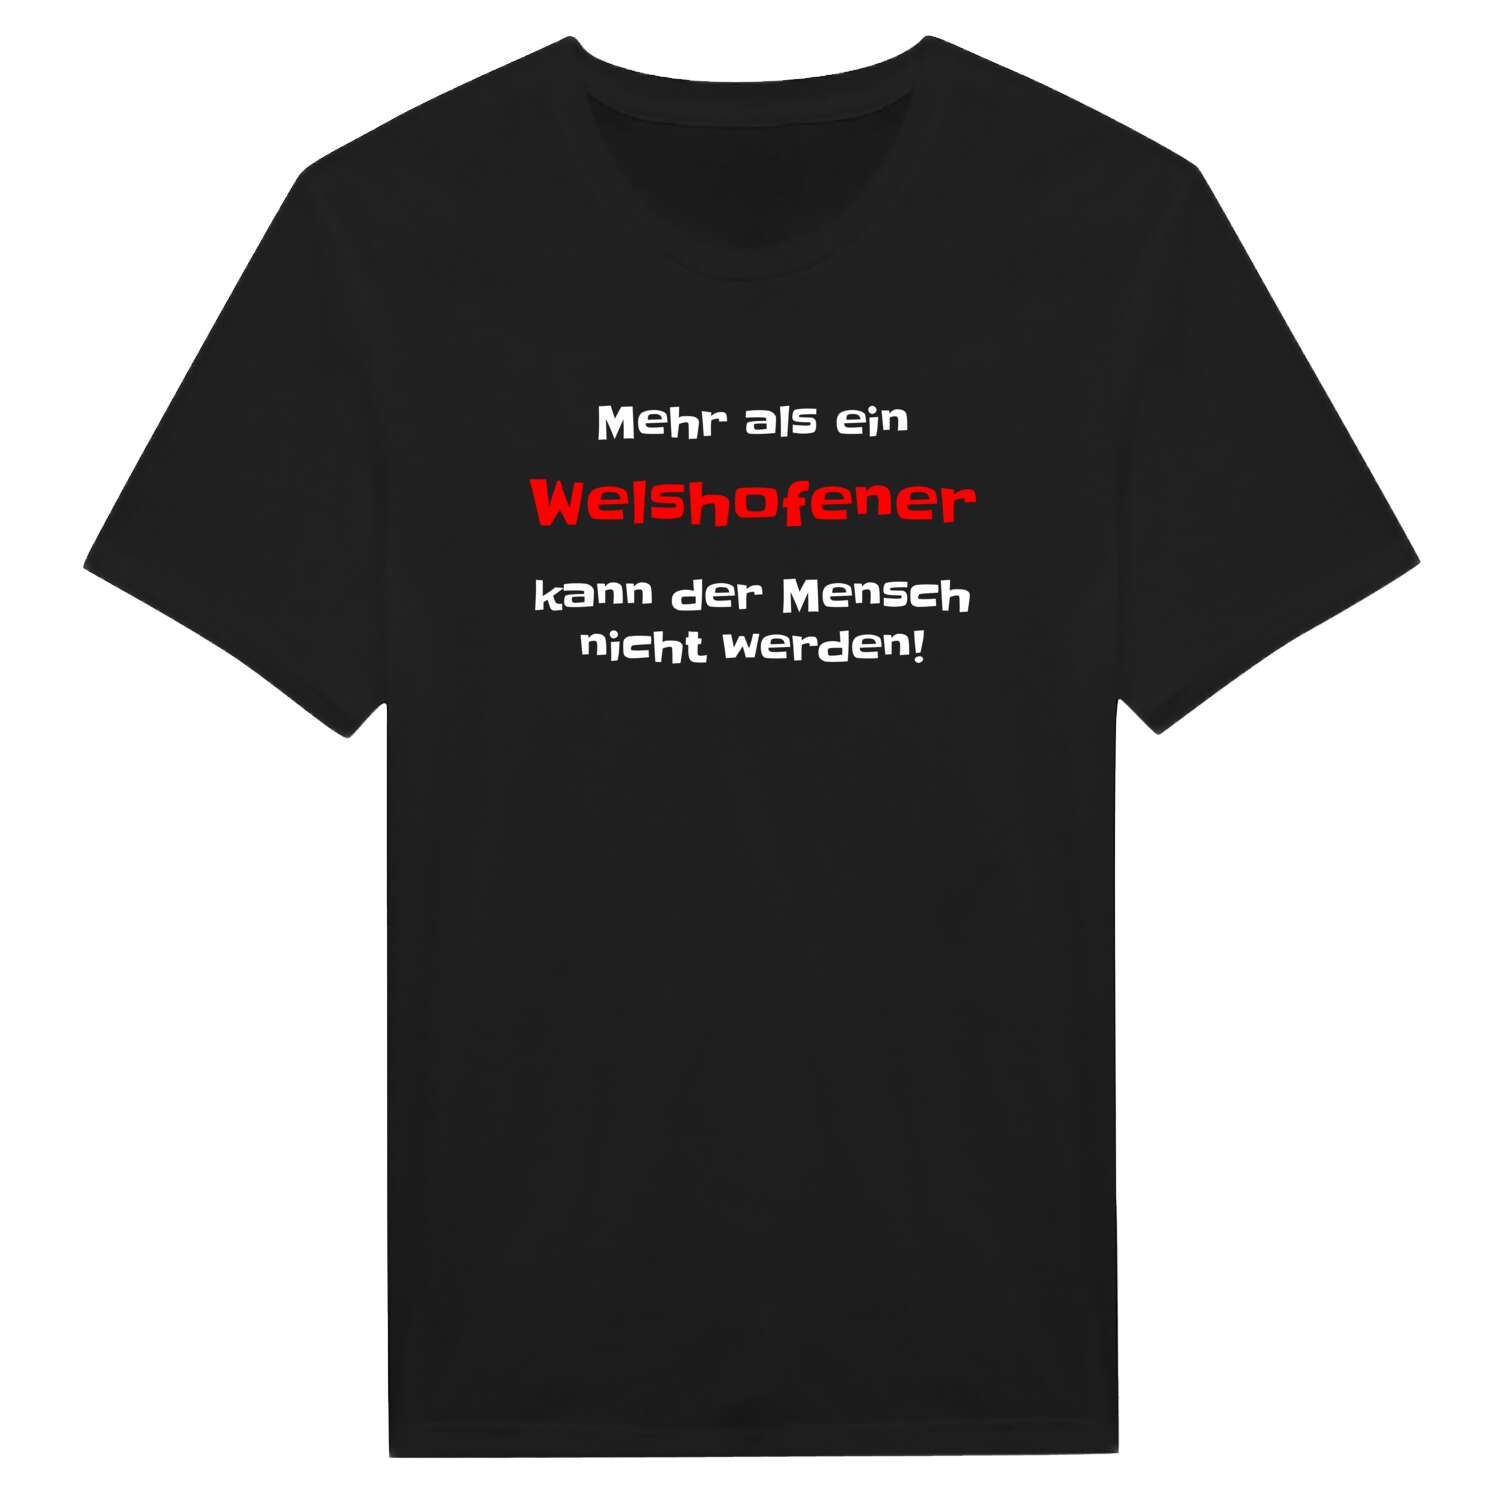 Welshofen T-Shirt »Mehr als ein«